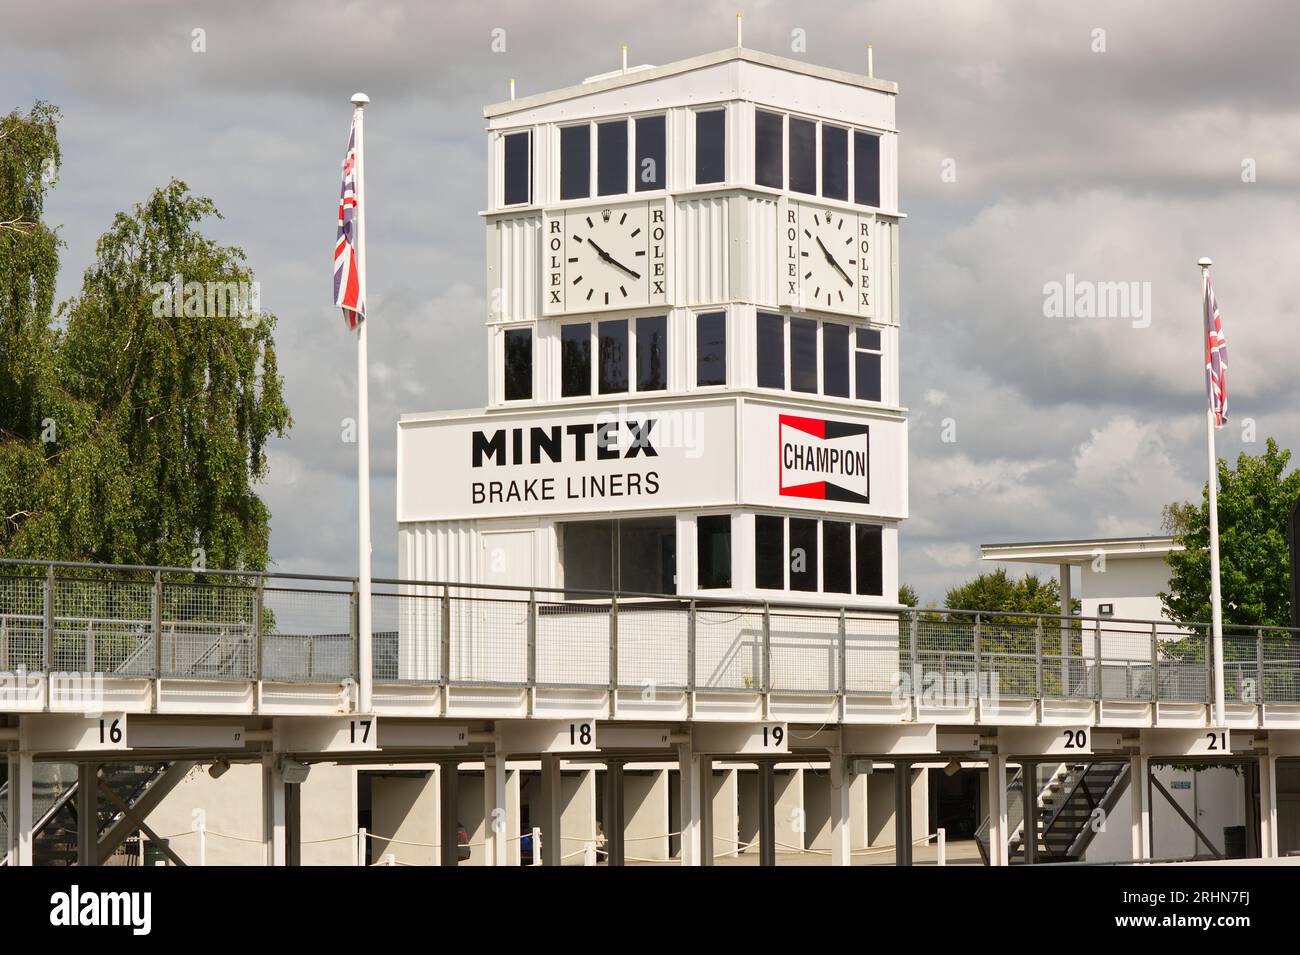 Bâtiment de contrôle sur le circuit de course automobile Goodwod dans le West Sussex, Angleterre. Banque D'Images